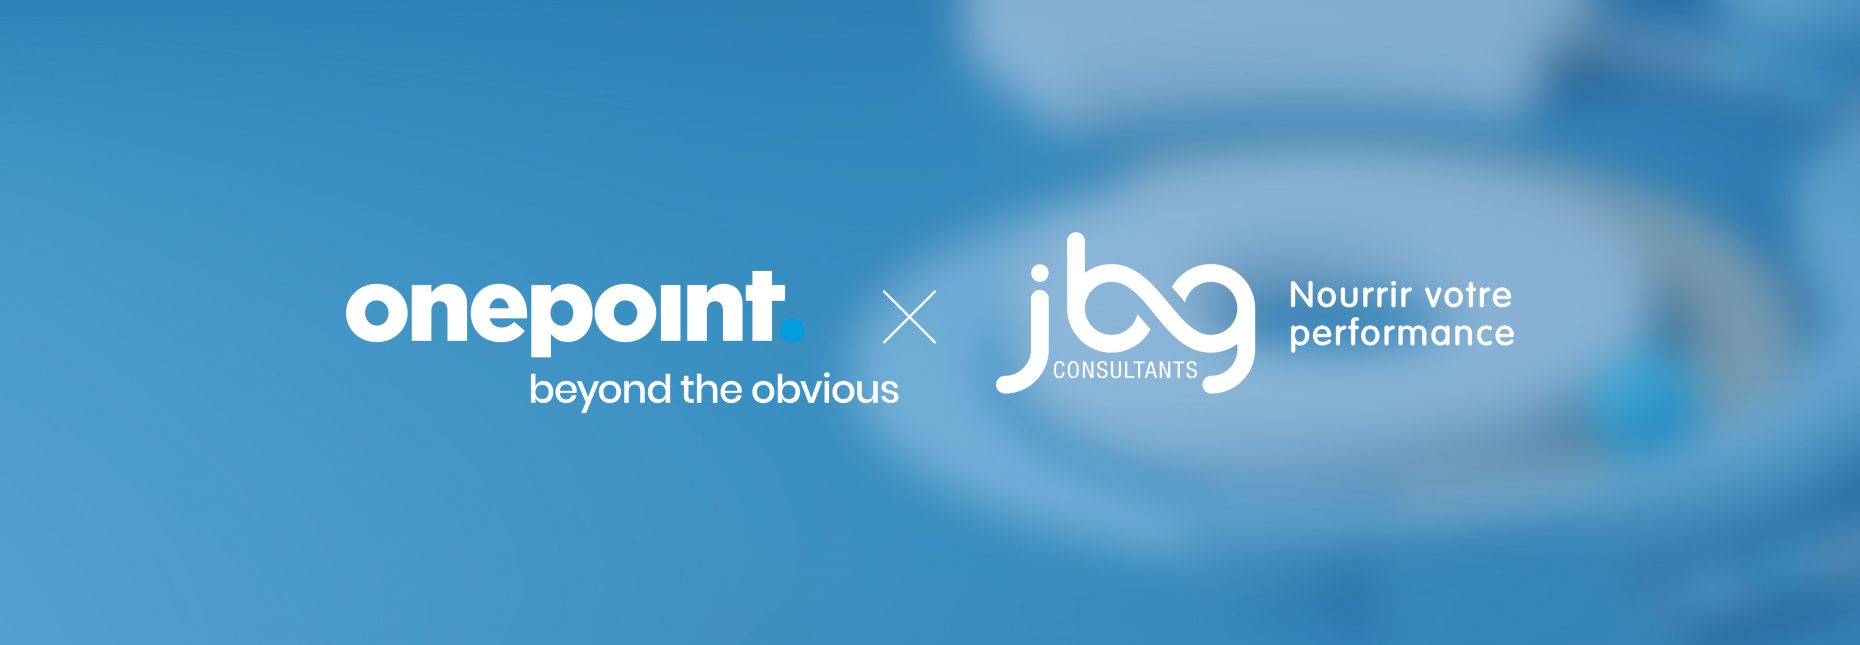 Bannière rassemblant les logos de onepoint et JBG Consultants pour l'acquisition du cabinet spécialiste de la filière alimentaire par onepoint